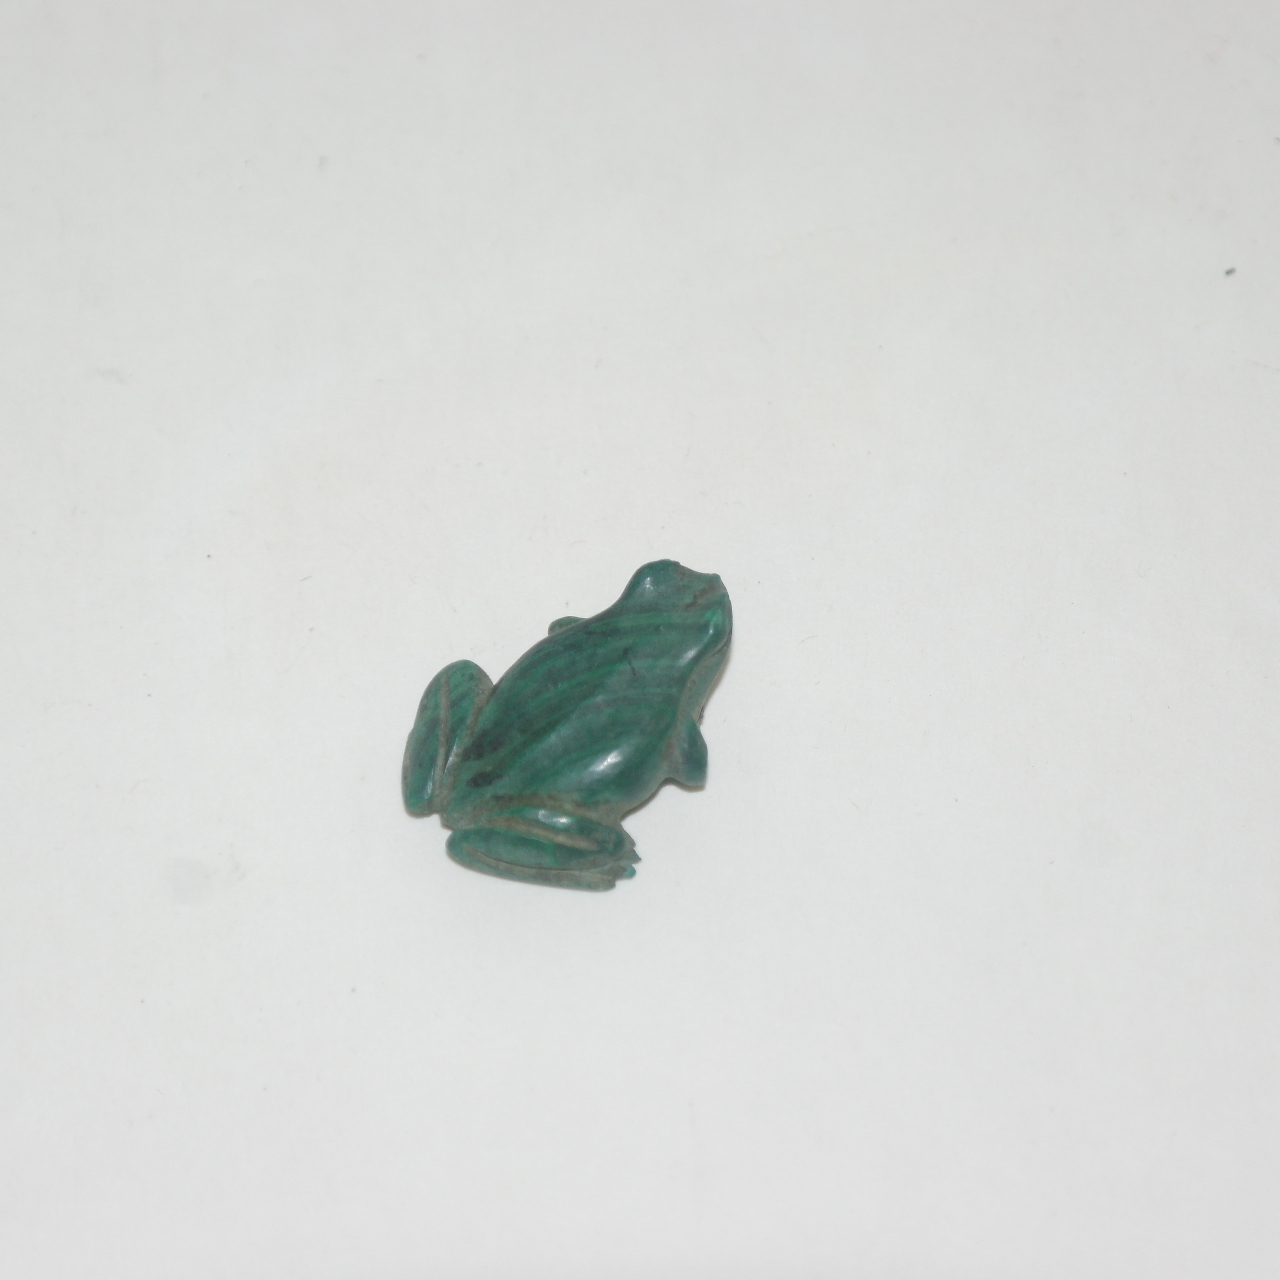 초소형크기의 청석돌로된 개구리 조각상